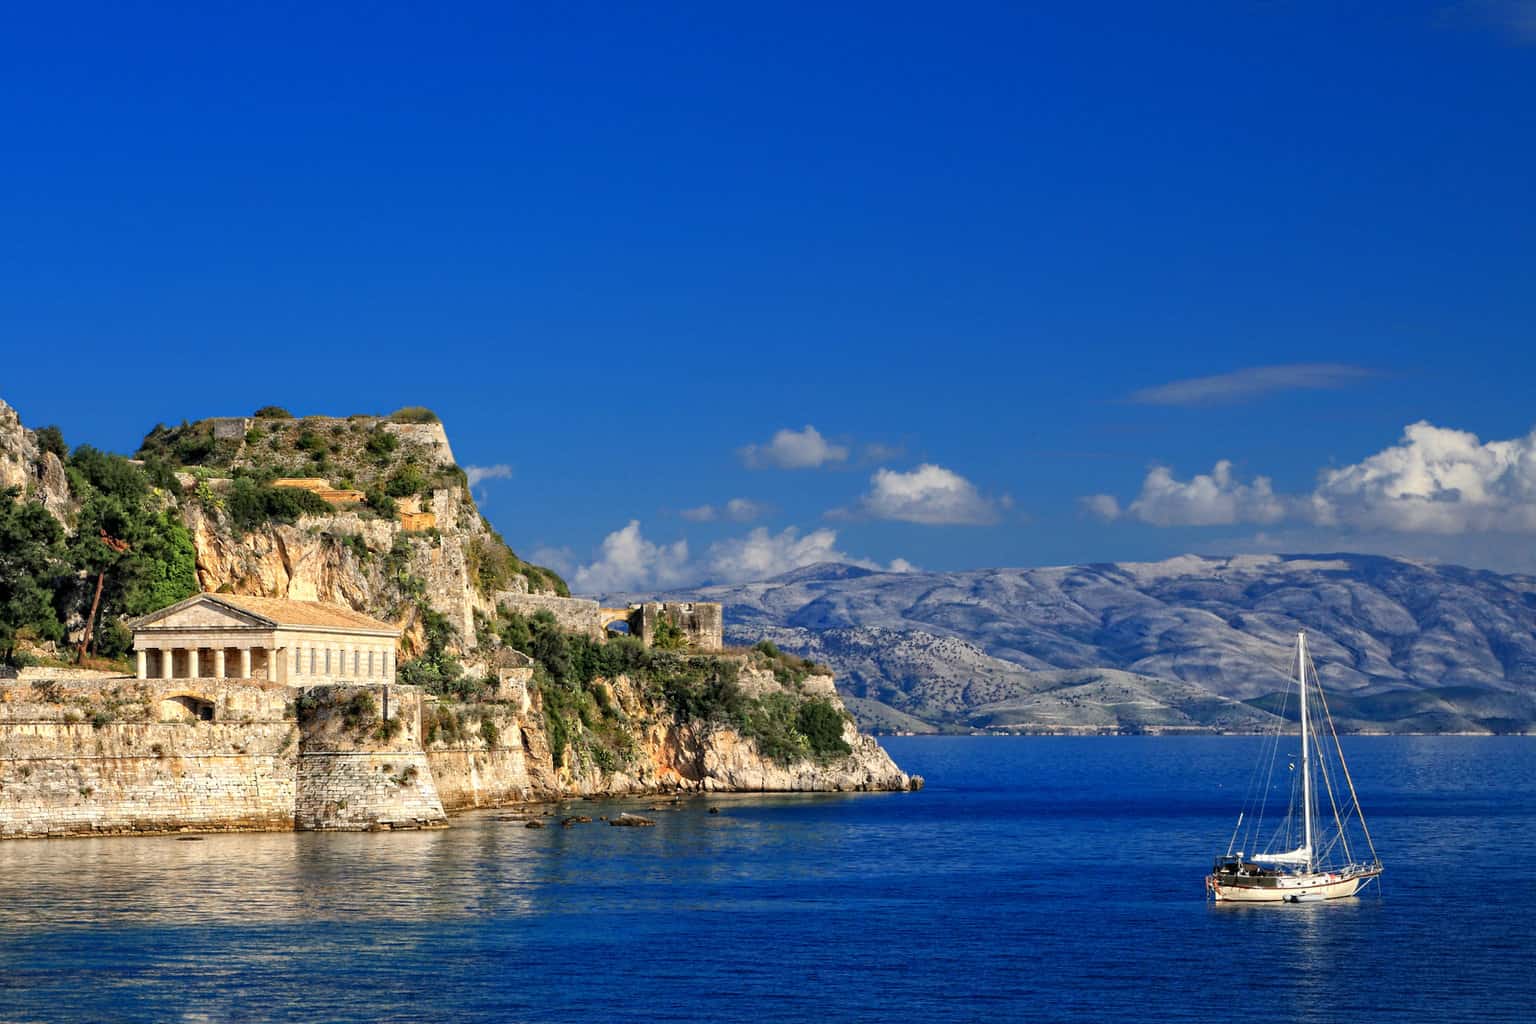 Corfu Island, Greece